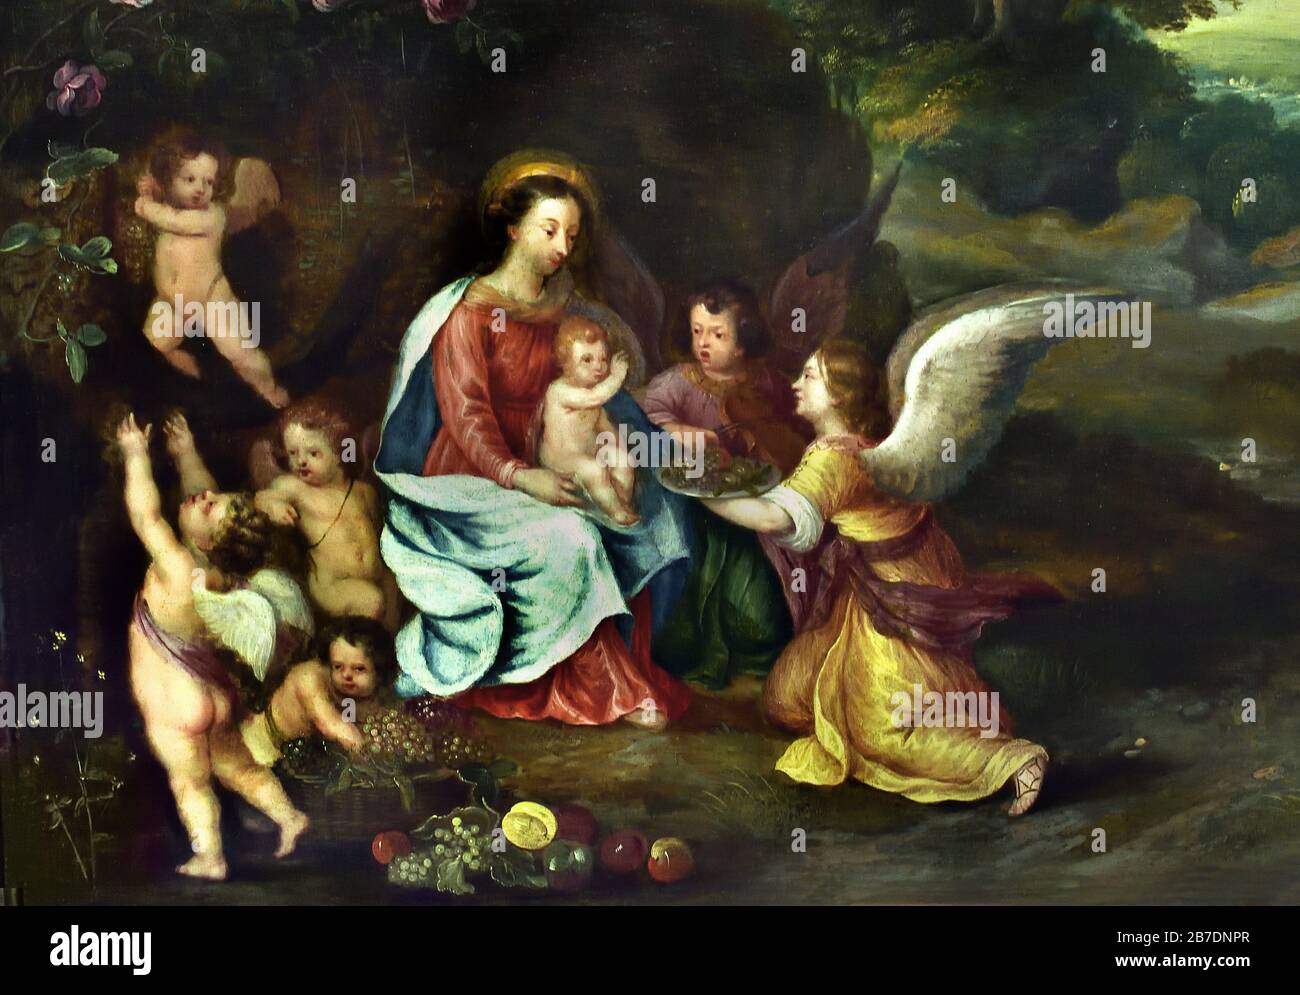 Madonna et enfant avec les Anges dans un paysage 1630 par Jan Brueghel le Jeune 1601-1678, la famille Brueghel ( Bruegel ou Breughel ), peintres flamands du XVIe au XVIIe siècle, belge, Belgique. Banque D'Images